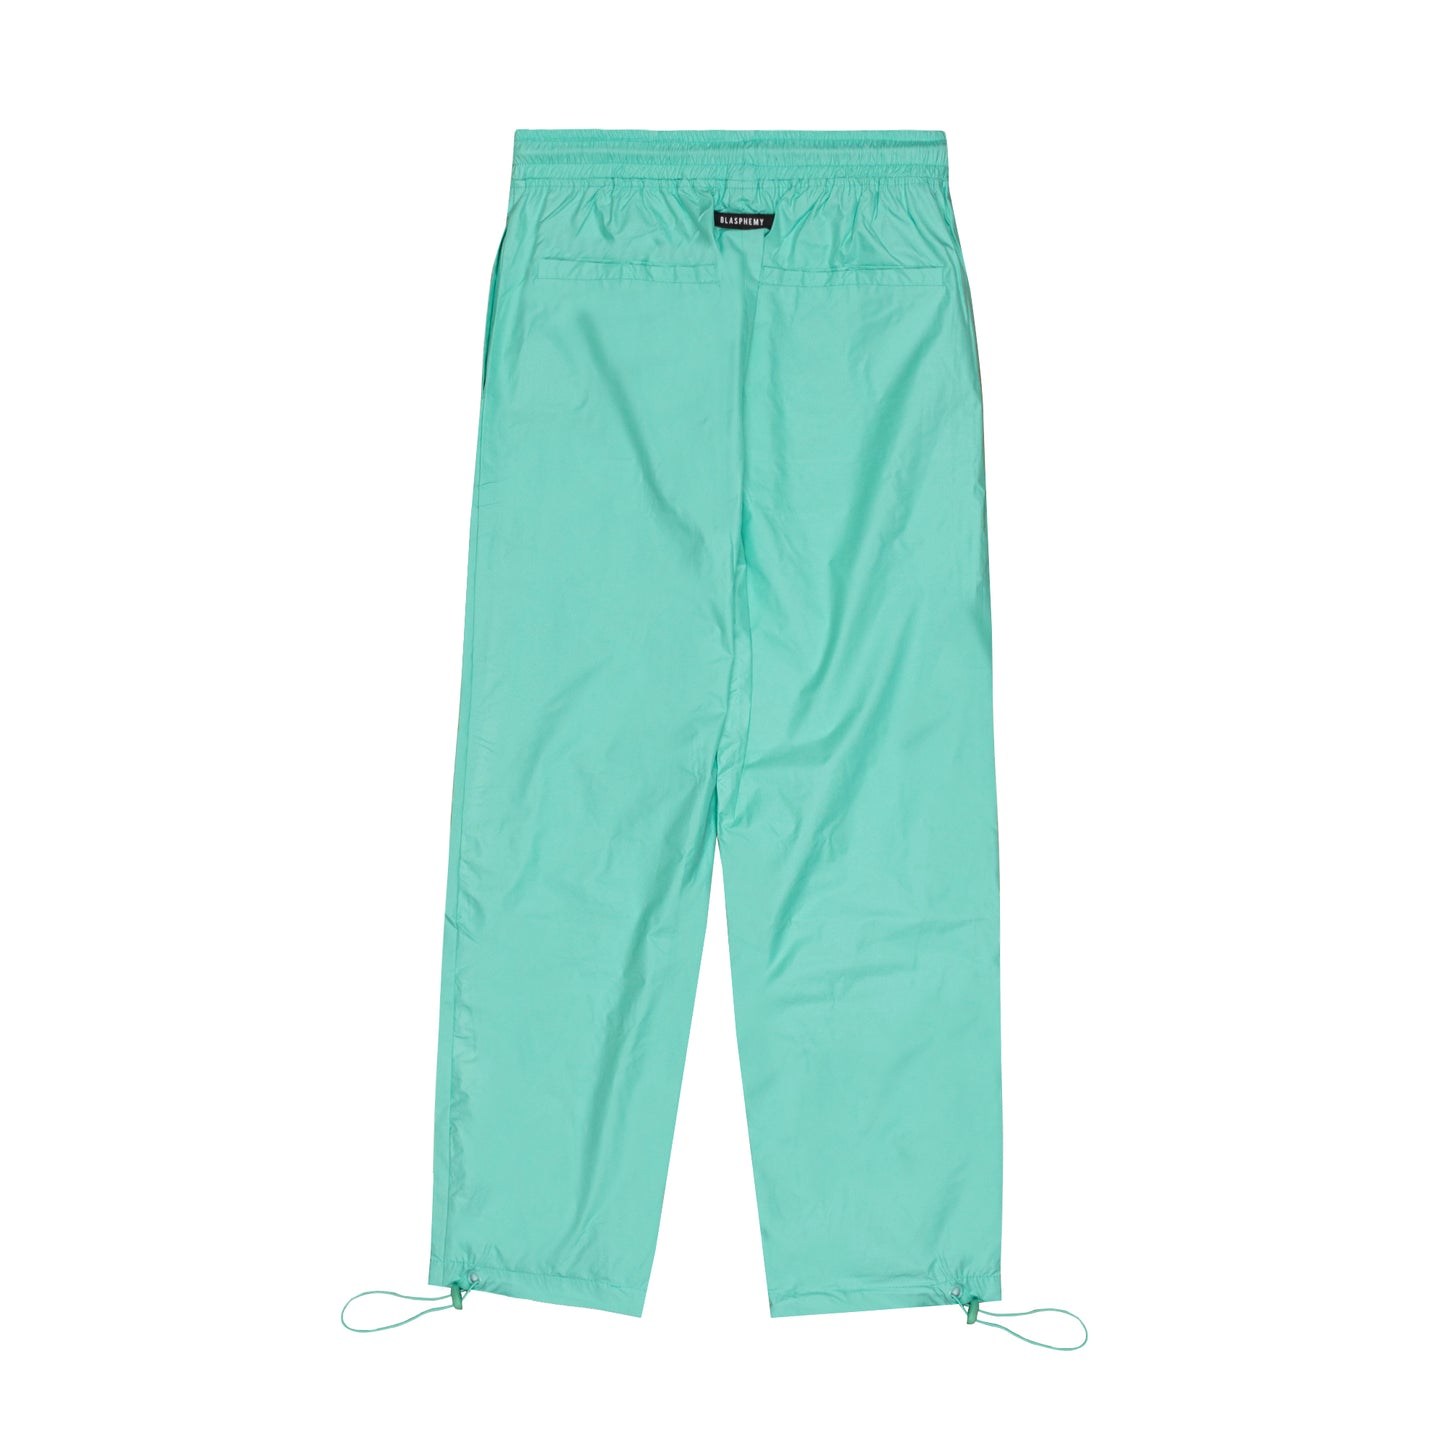 Turquoise Windbreaker Pants